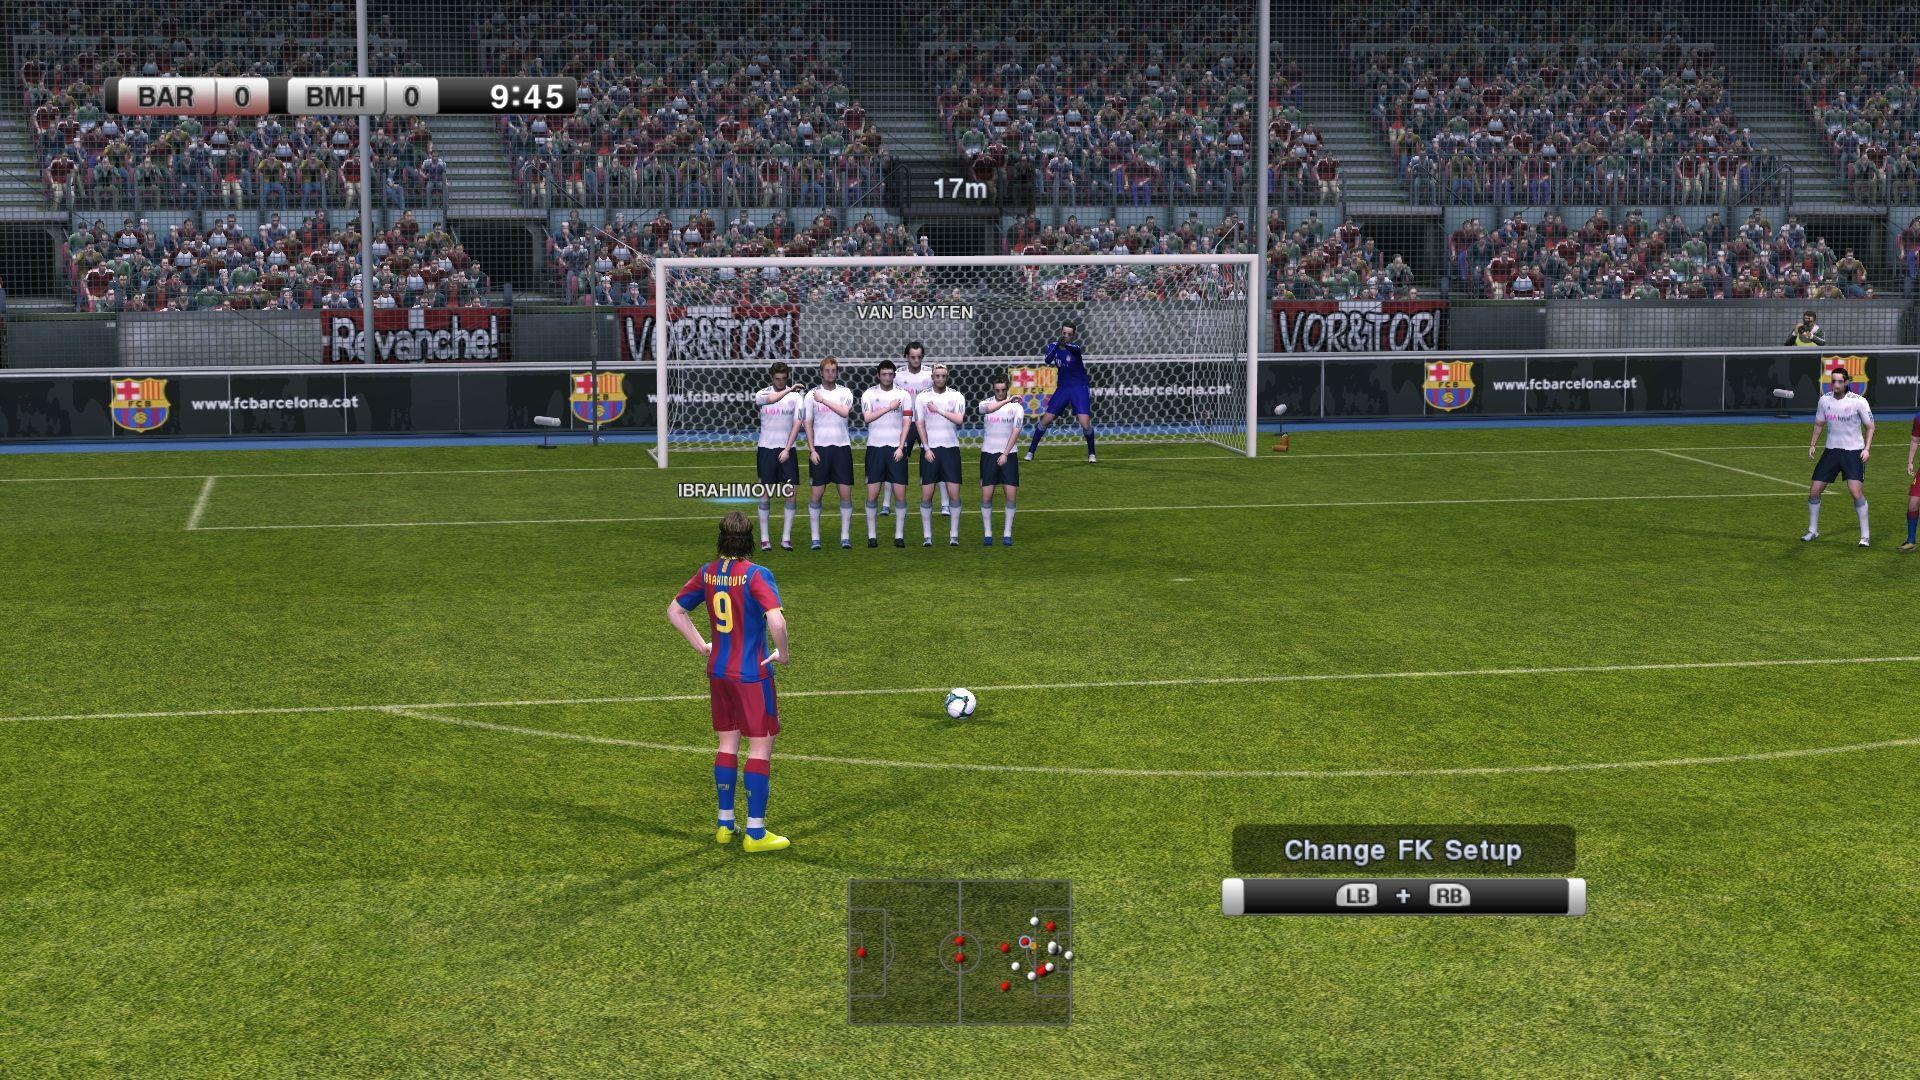 Free PES 2011 update detailed - Pro Evolution Soccer 2011 - Gamereactor